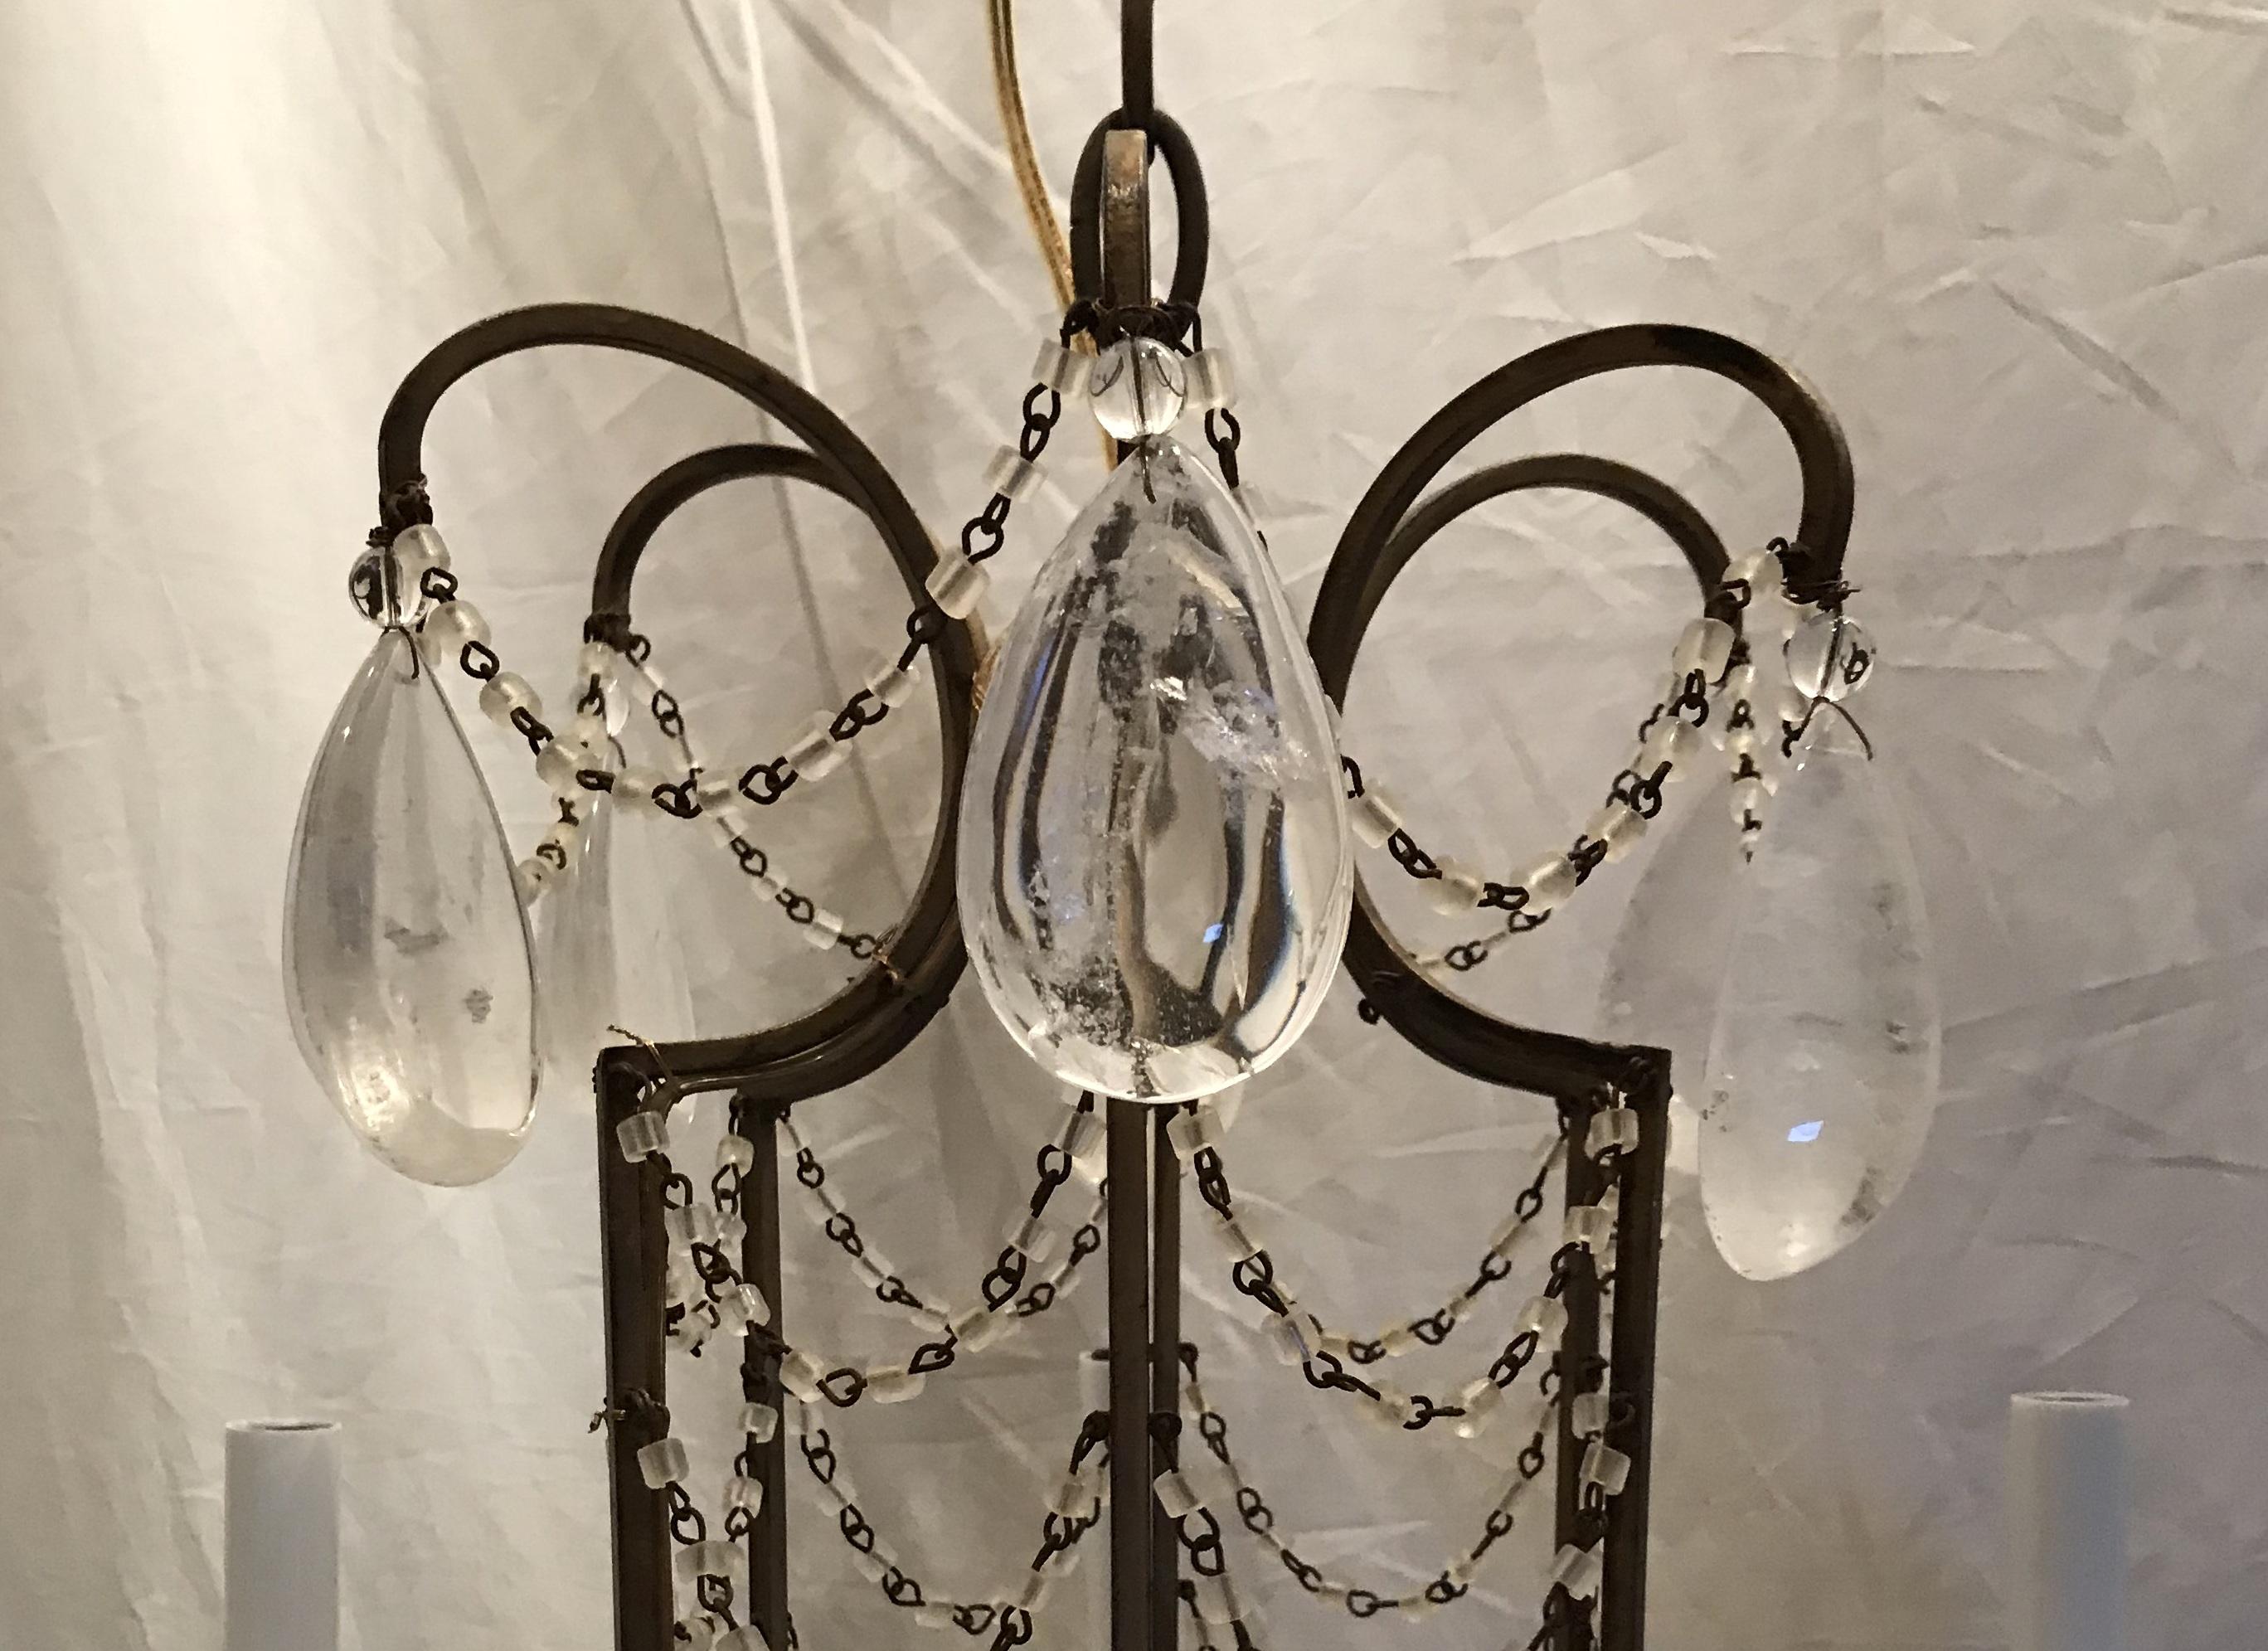 Un merveilleux lustre français en perles de macaroni et gouttes de cristal de roche, à la manière de la Maison Baguès, avec un cadre en forme de cage d'oiseau avec six lumières, complètement recâblé et prêt à être installé et apprécié.